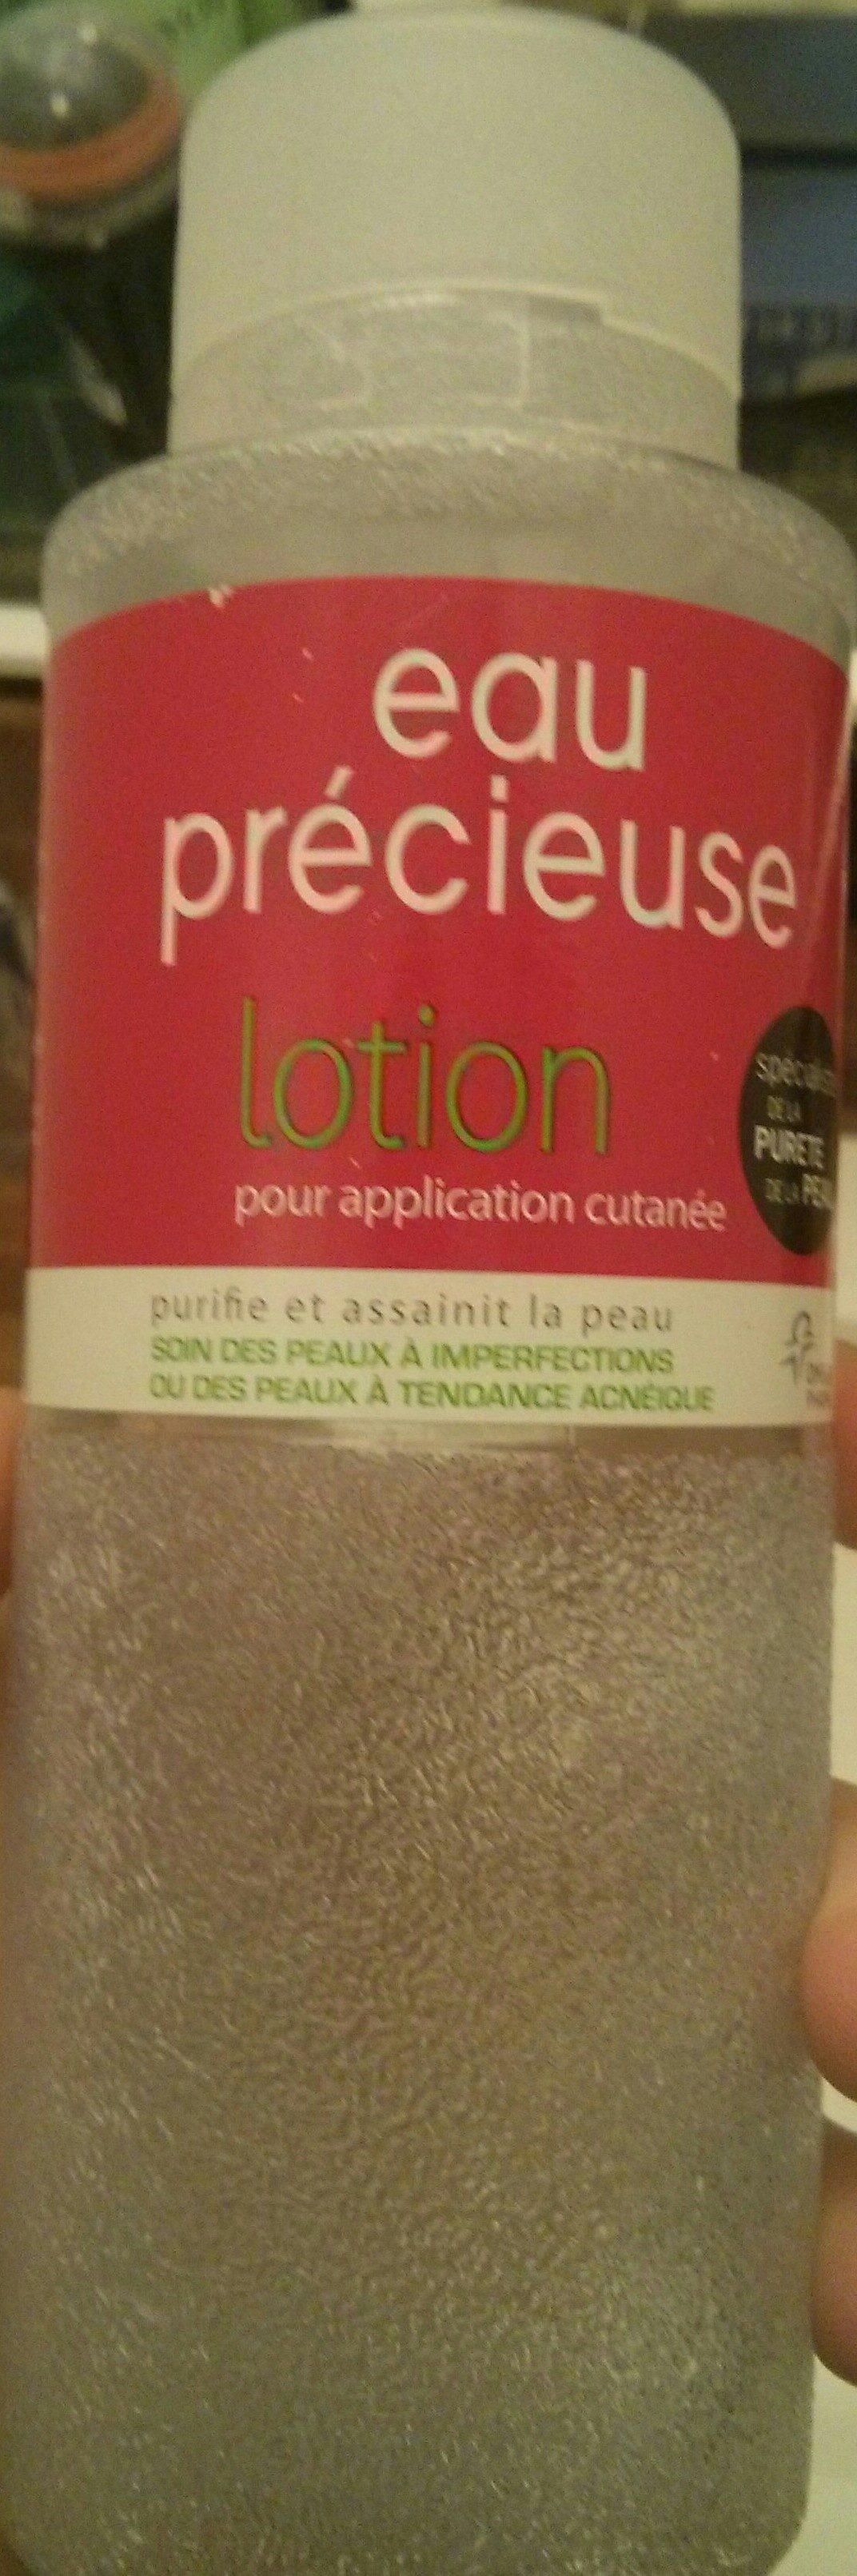 eau précieuse lotion - Produit - fr